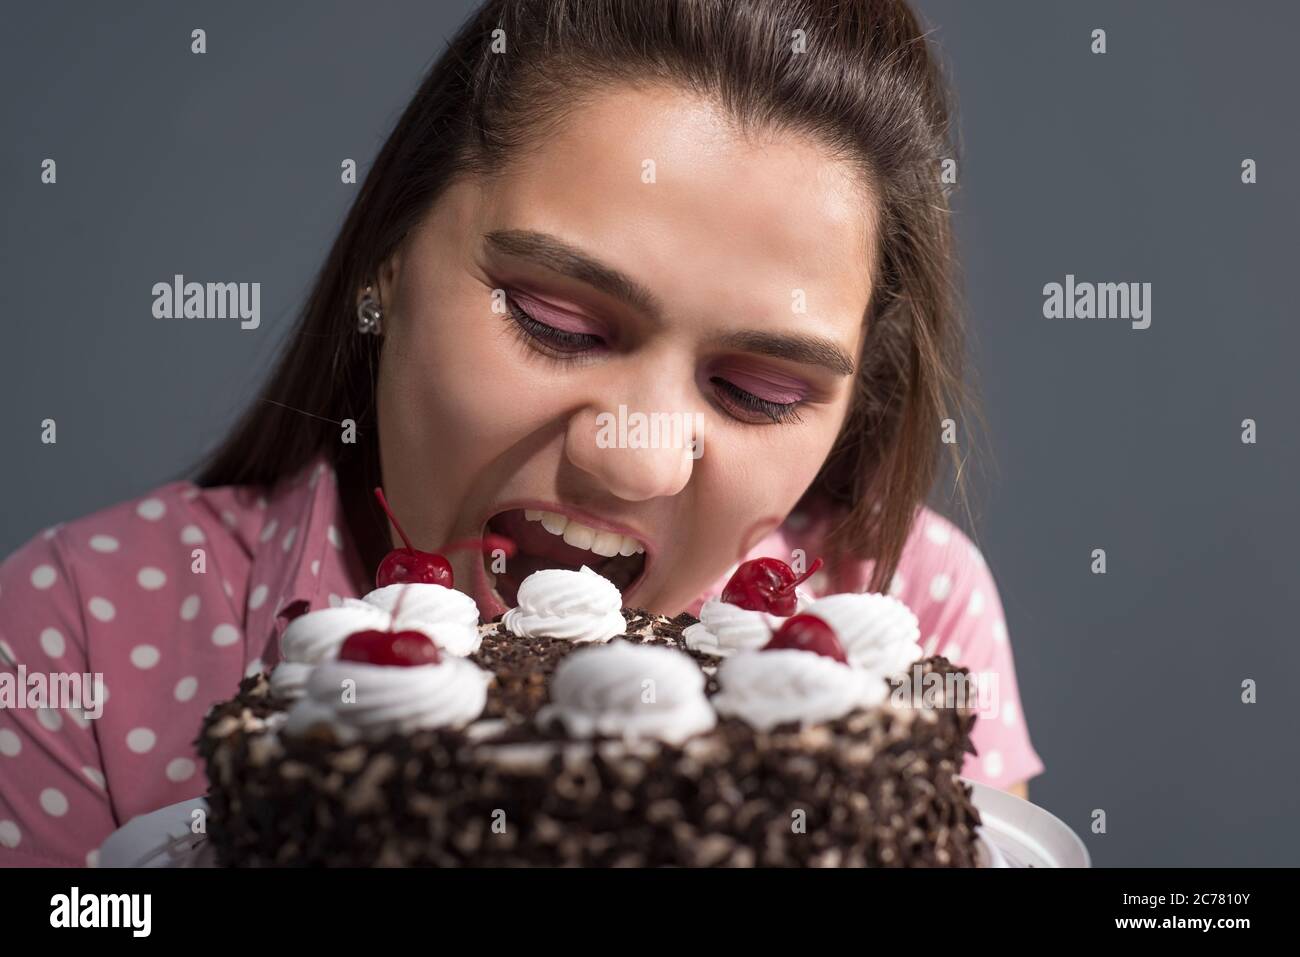 Portrait eines Mädchens, das einen Kuchen beißt. Studio Foto auf einem grauen Hintergrund Stockfoto